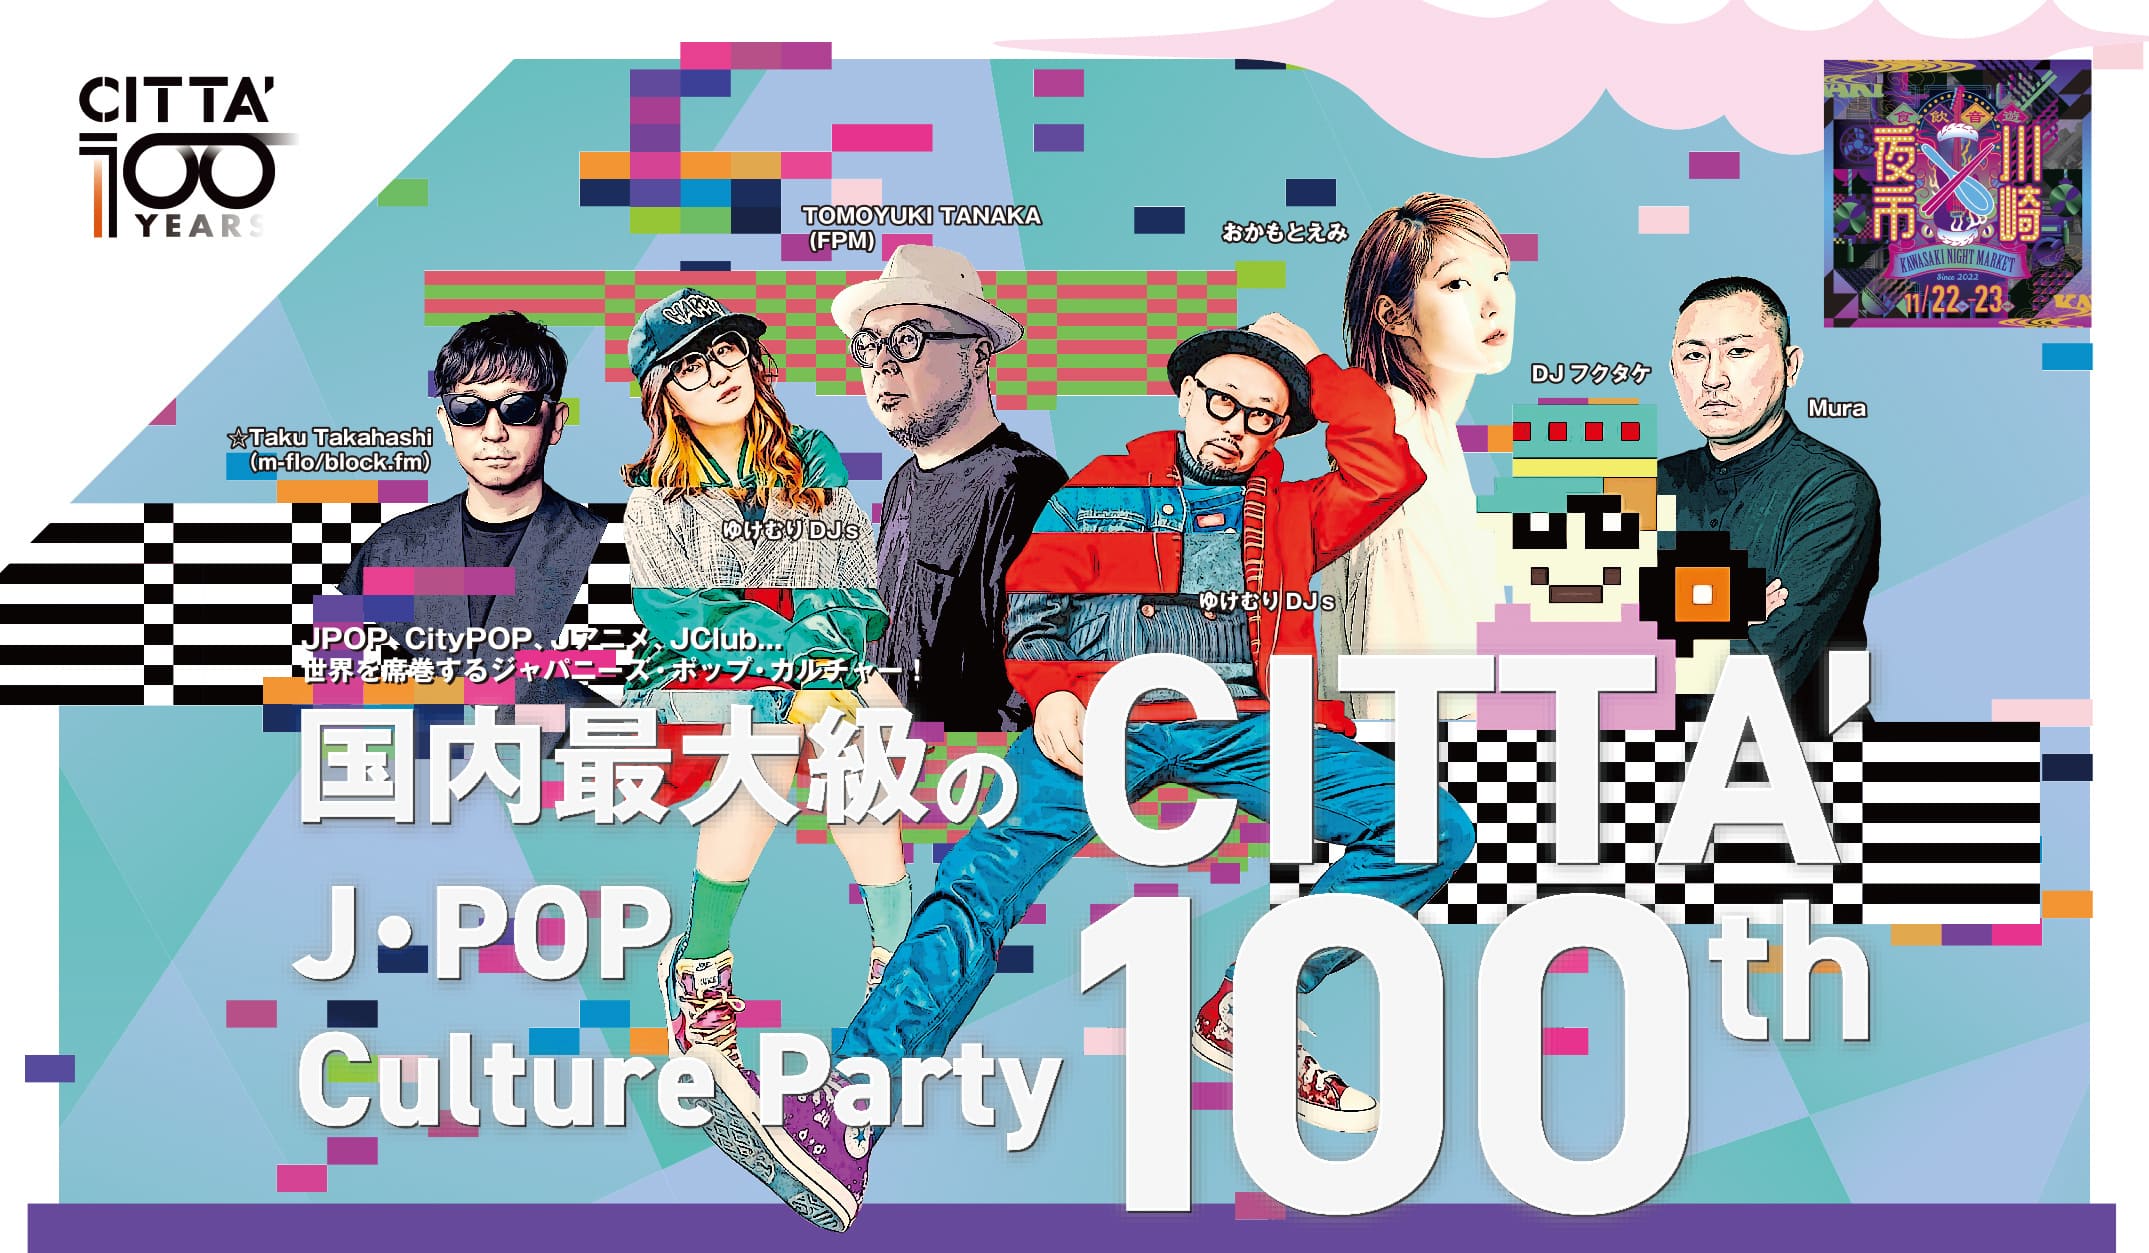 国内最大級のJpop Culture Party CITTA’ 100th